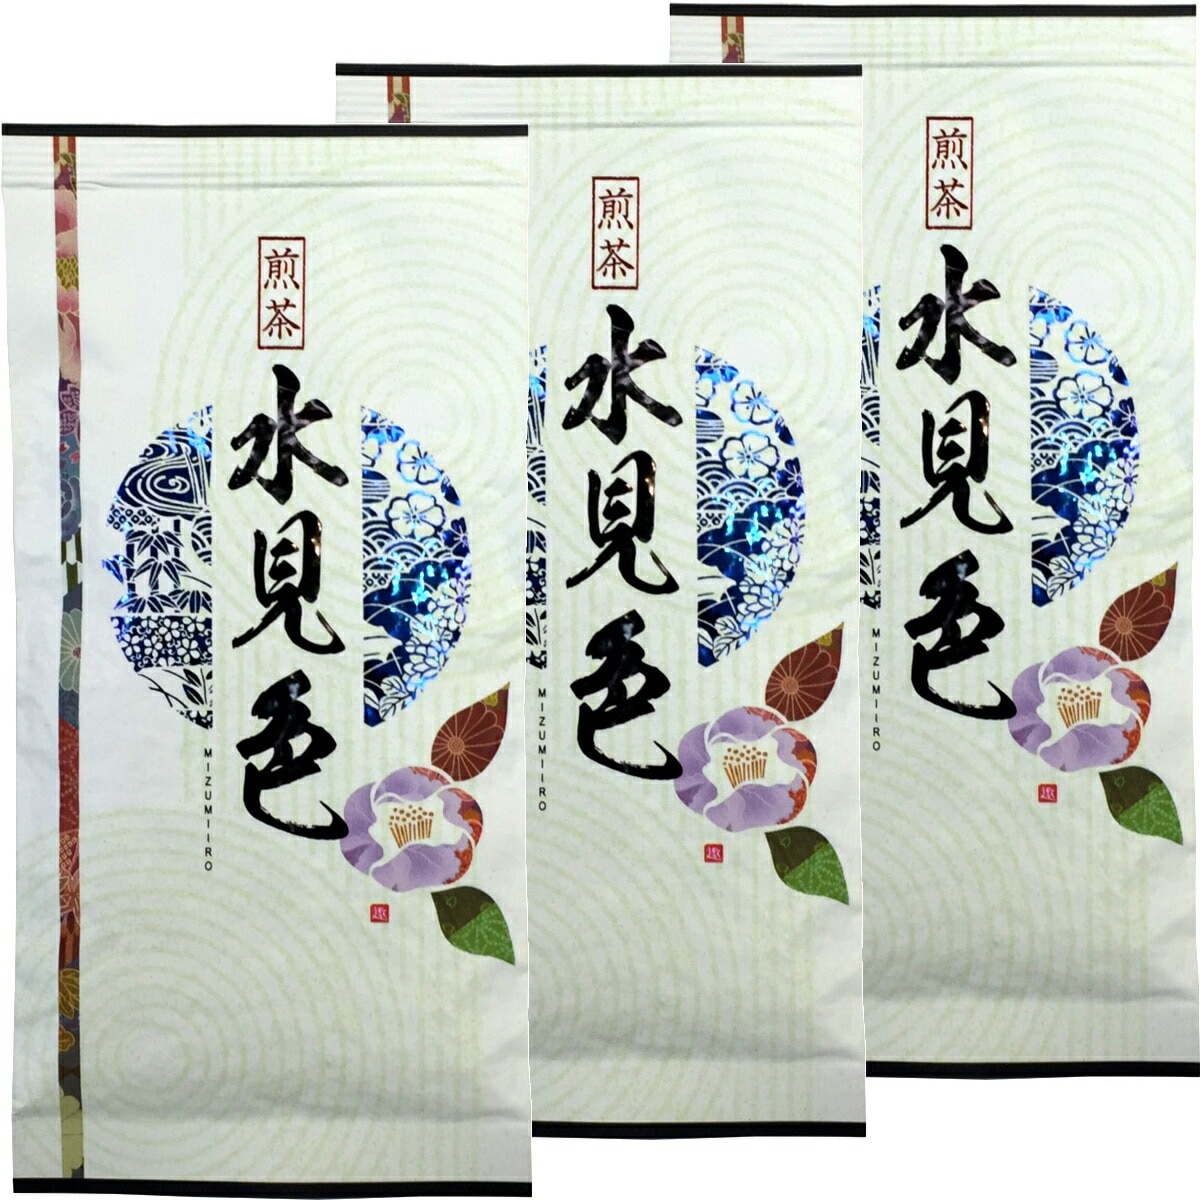 日本茶 お茶 煎茶 茶葉 水見色100g3袋セット 煎茶 茶葉 国産 葉酸 緑茶 ギフト バレン